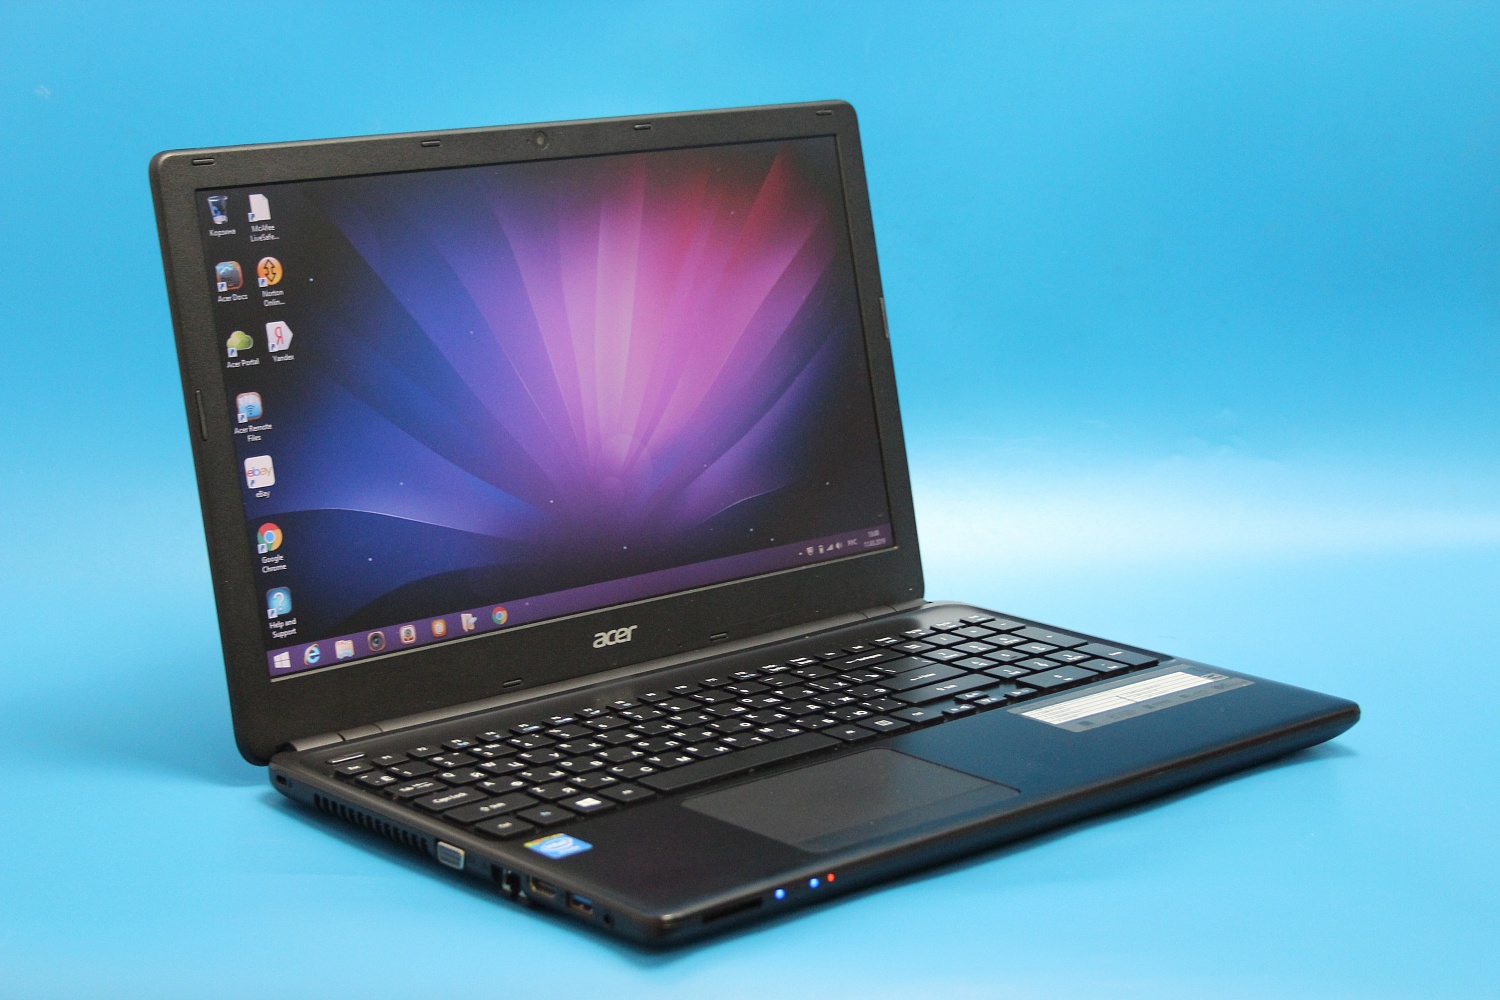 Ноутбук Acer TRAVELMATE 8571-943g25mi. Acer ноутбук 32002615334. Какие Ноутбуки устарели. Какой для ноутбука Асер акутормлор цена Ташкенте. Какой производитель ноутбуков лучше